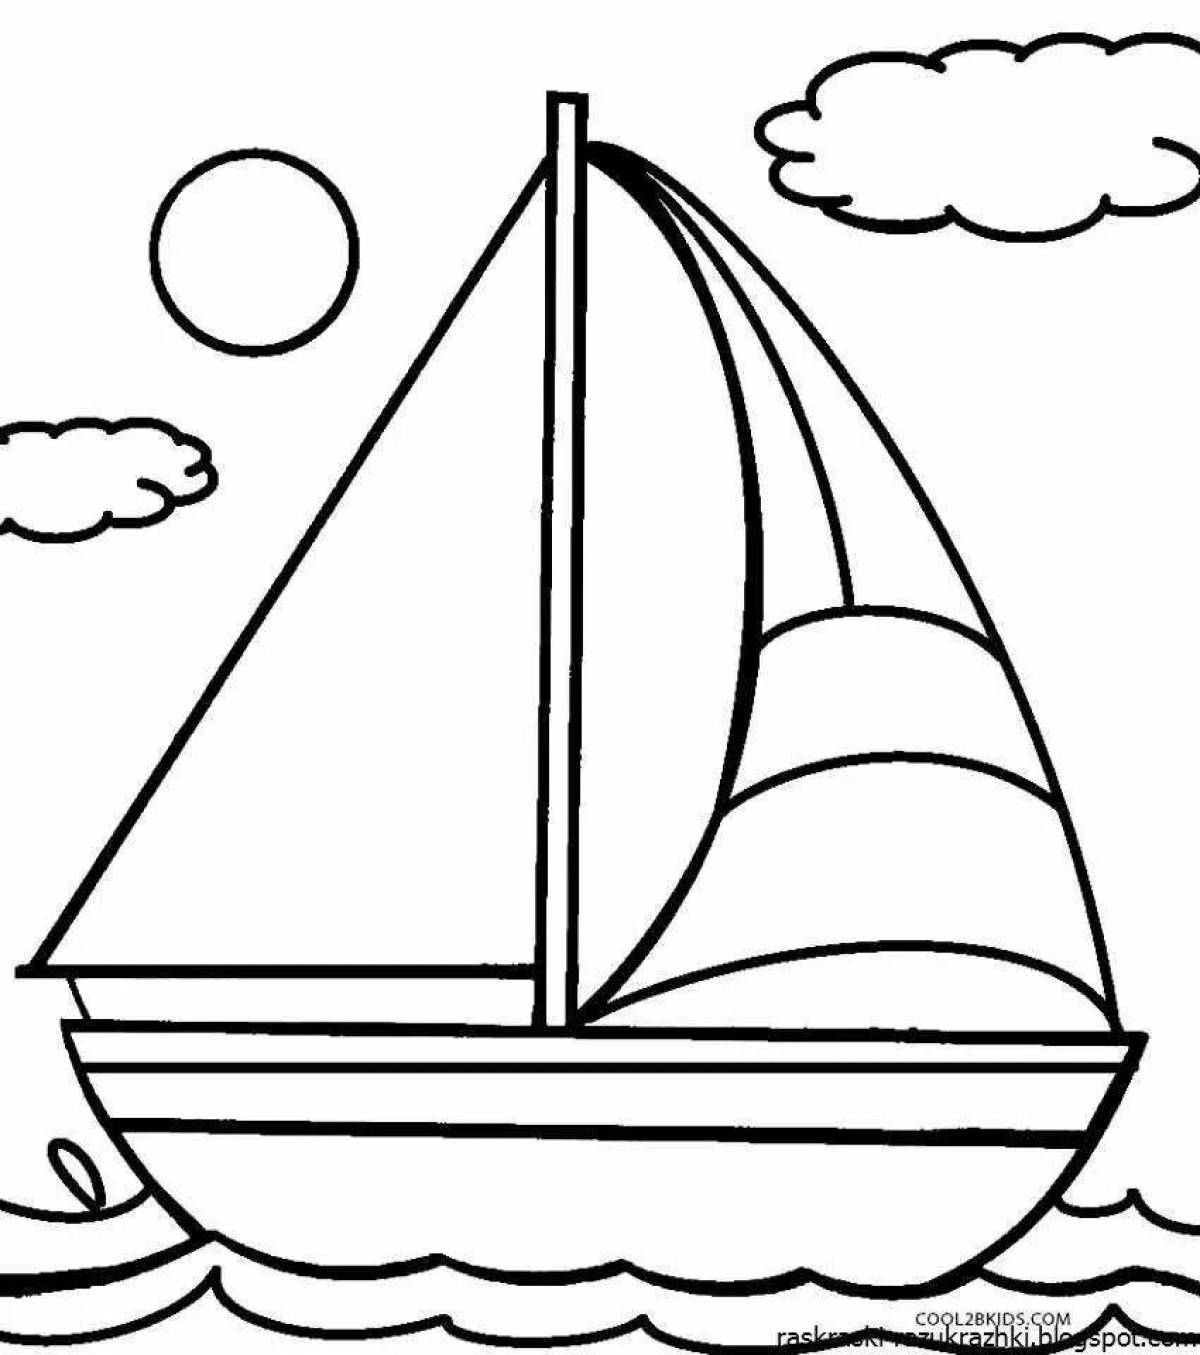 Привлекательная раскраска лодки для детей 6-7 лет